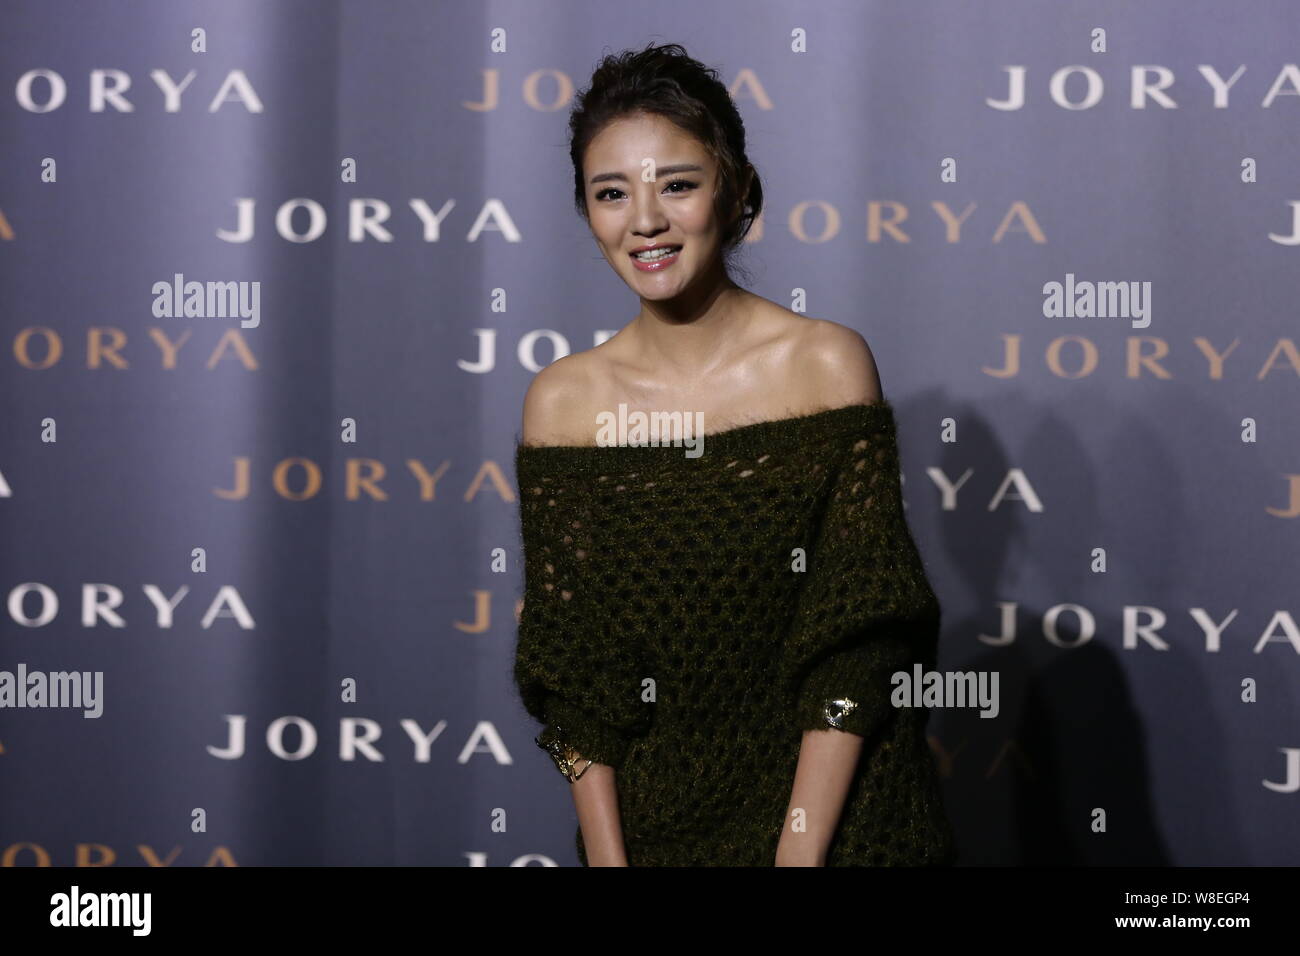 L'actrice taïwanaise Ady une pose comme elle arrive à l'JORYA Fashion 2015 Exposition 'Réflexion' de New York à Shanghai, Chine, 22 mai 2015. Banque D'Images